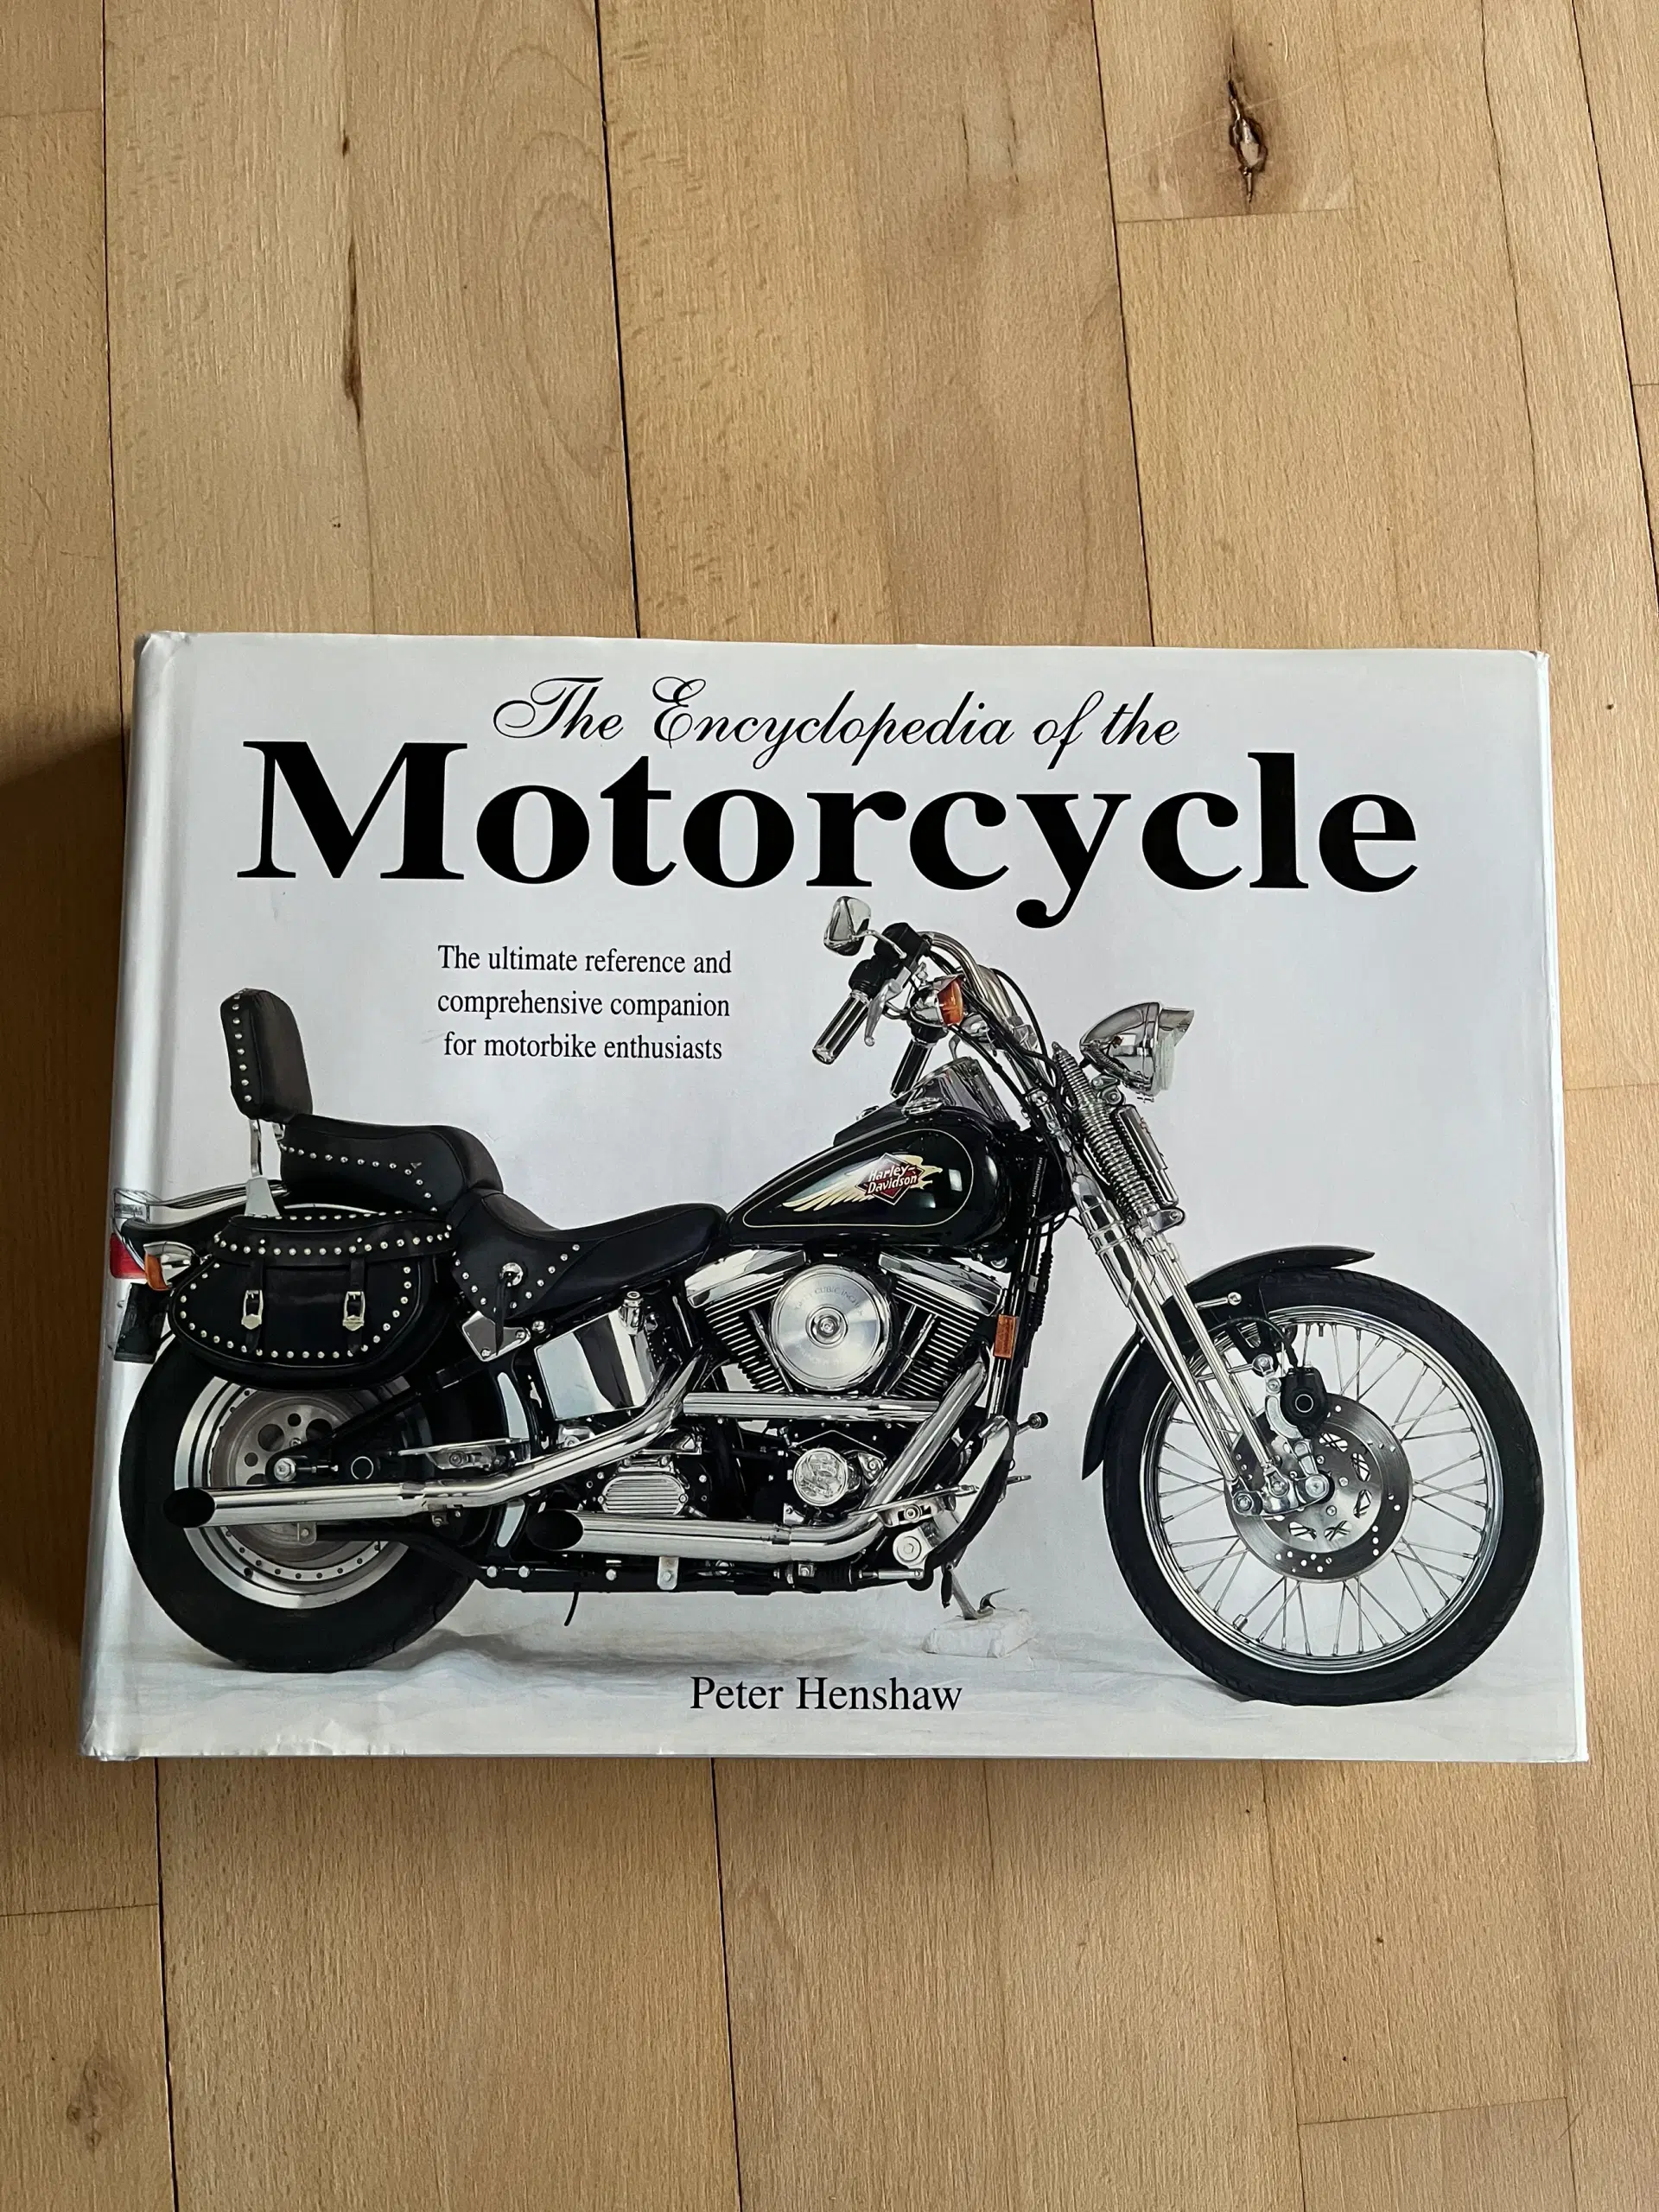 Harley-Davidson bøger